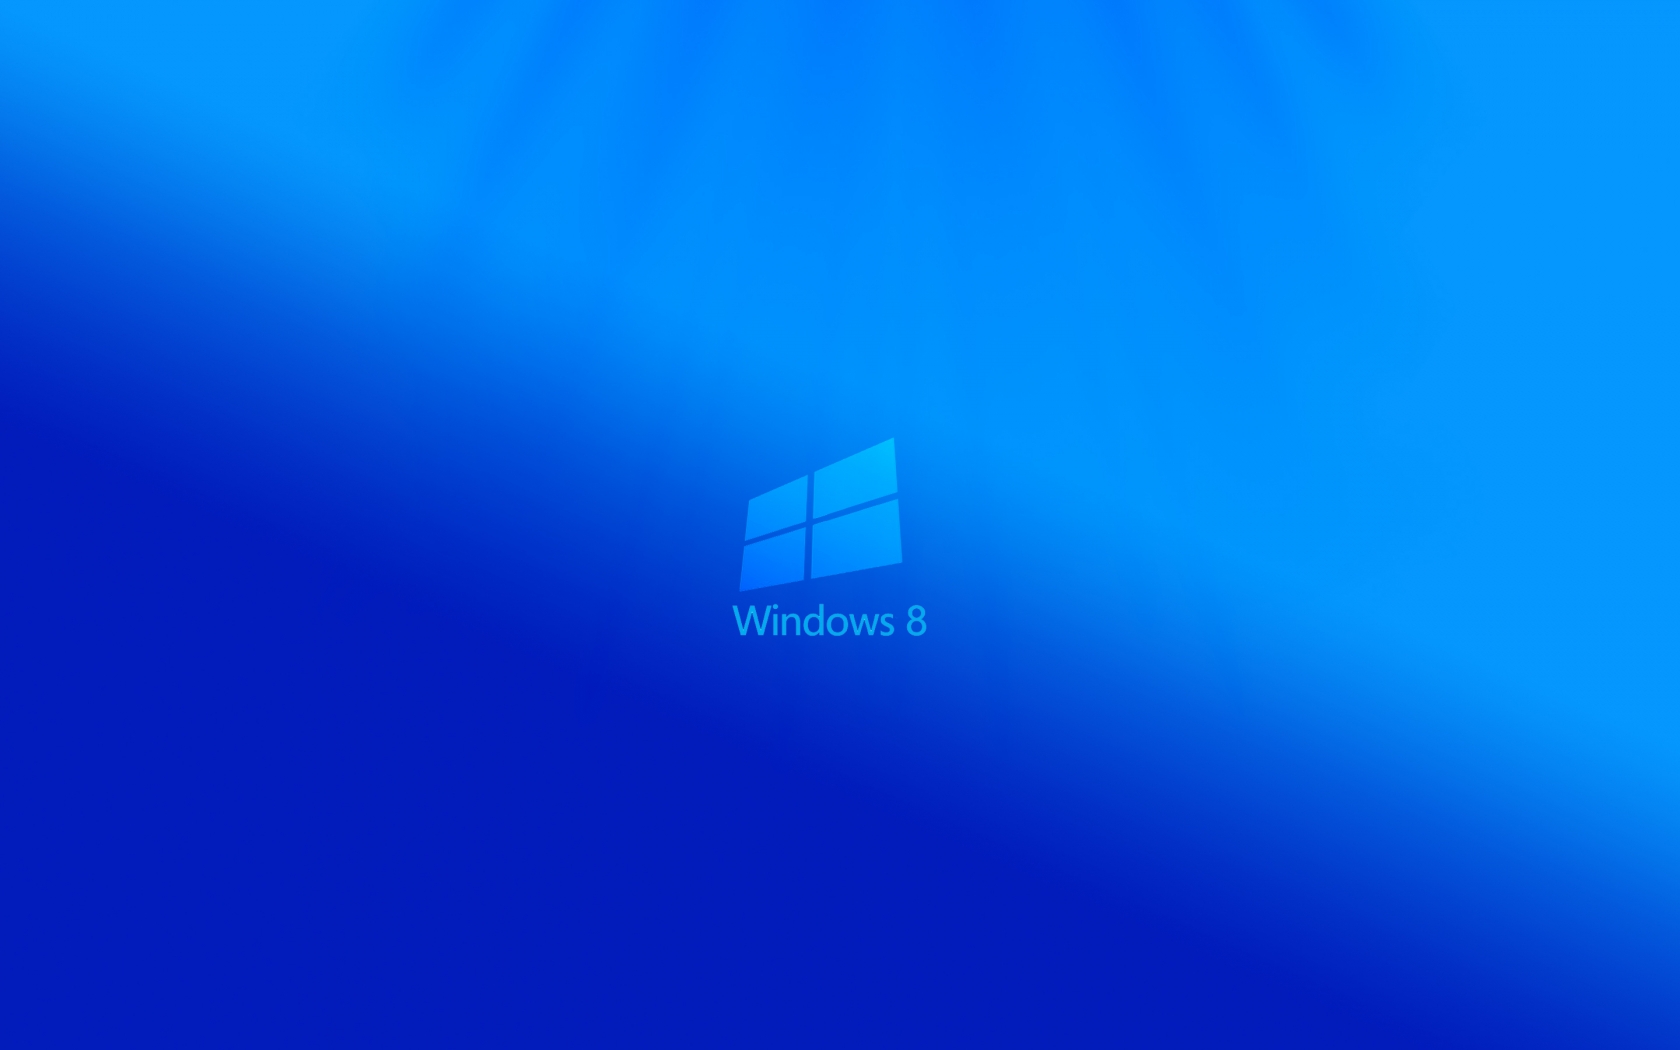 Windows 8 Light for 1680 x 1050 widescreen resolution